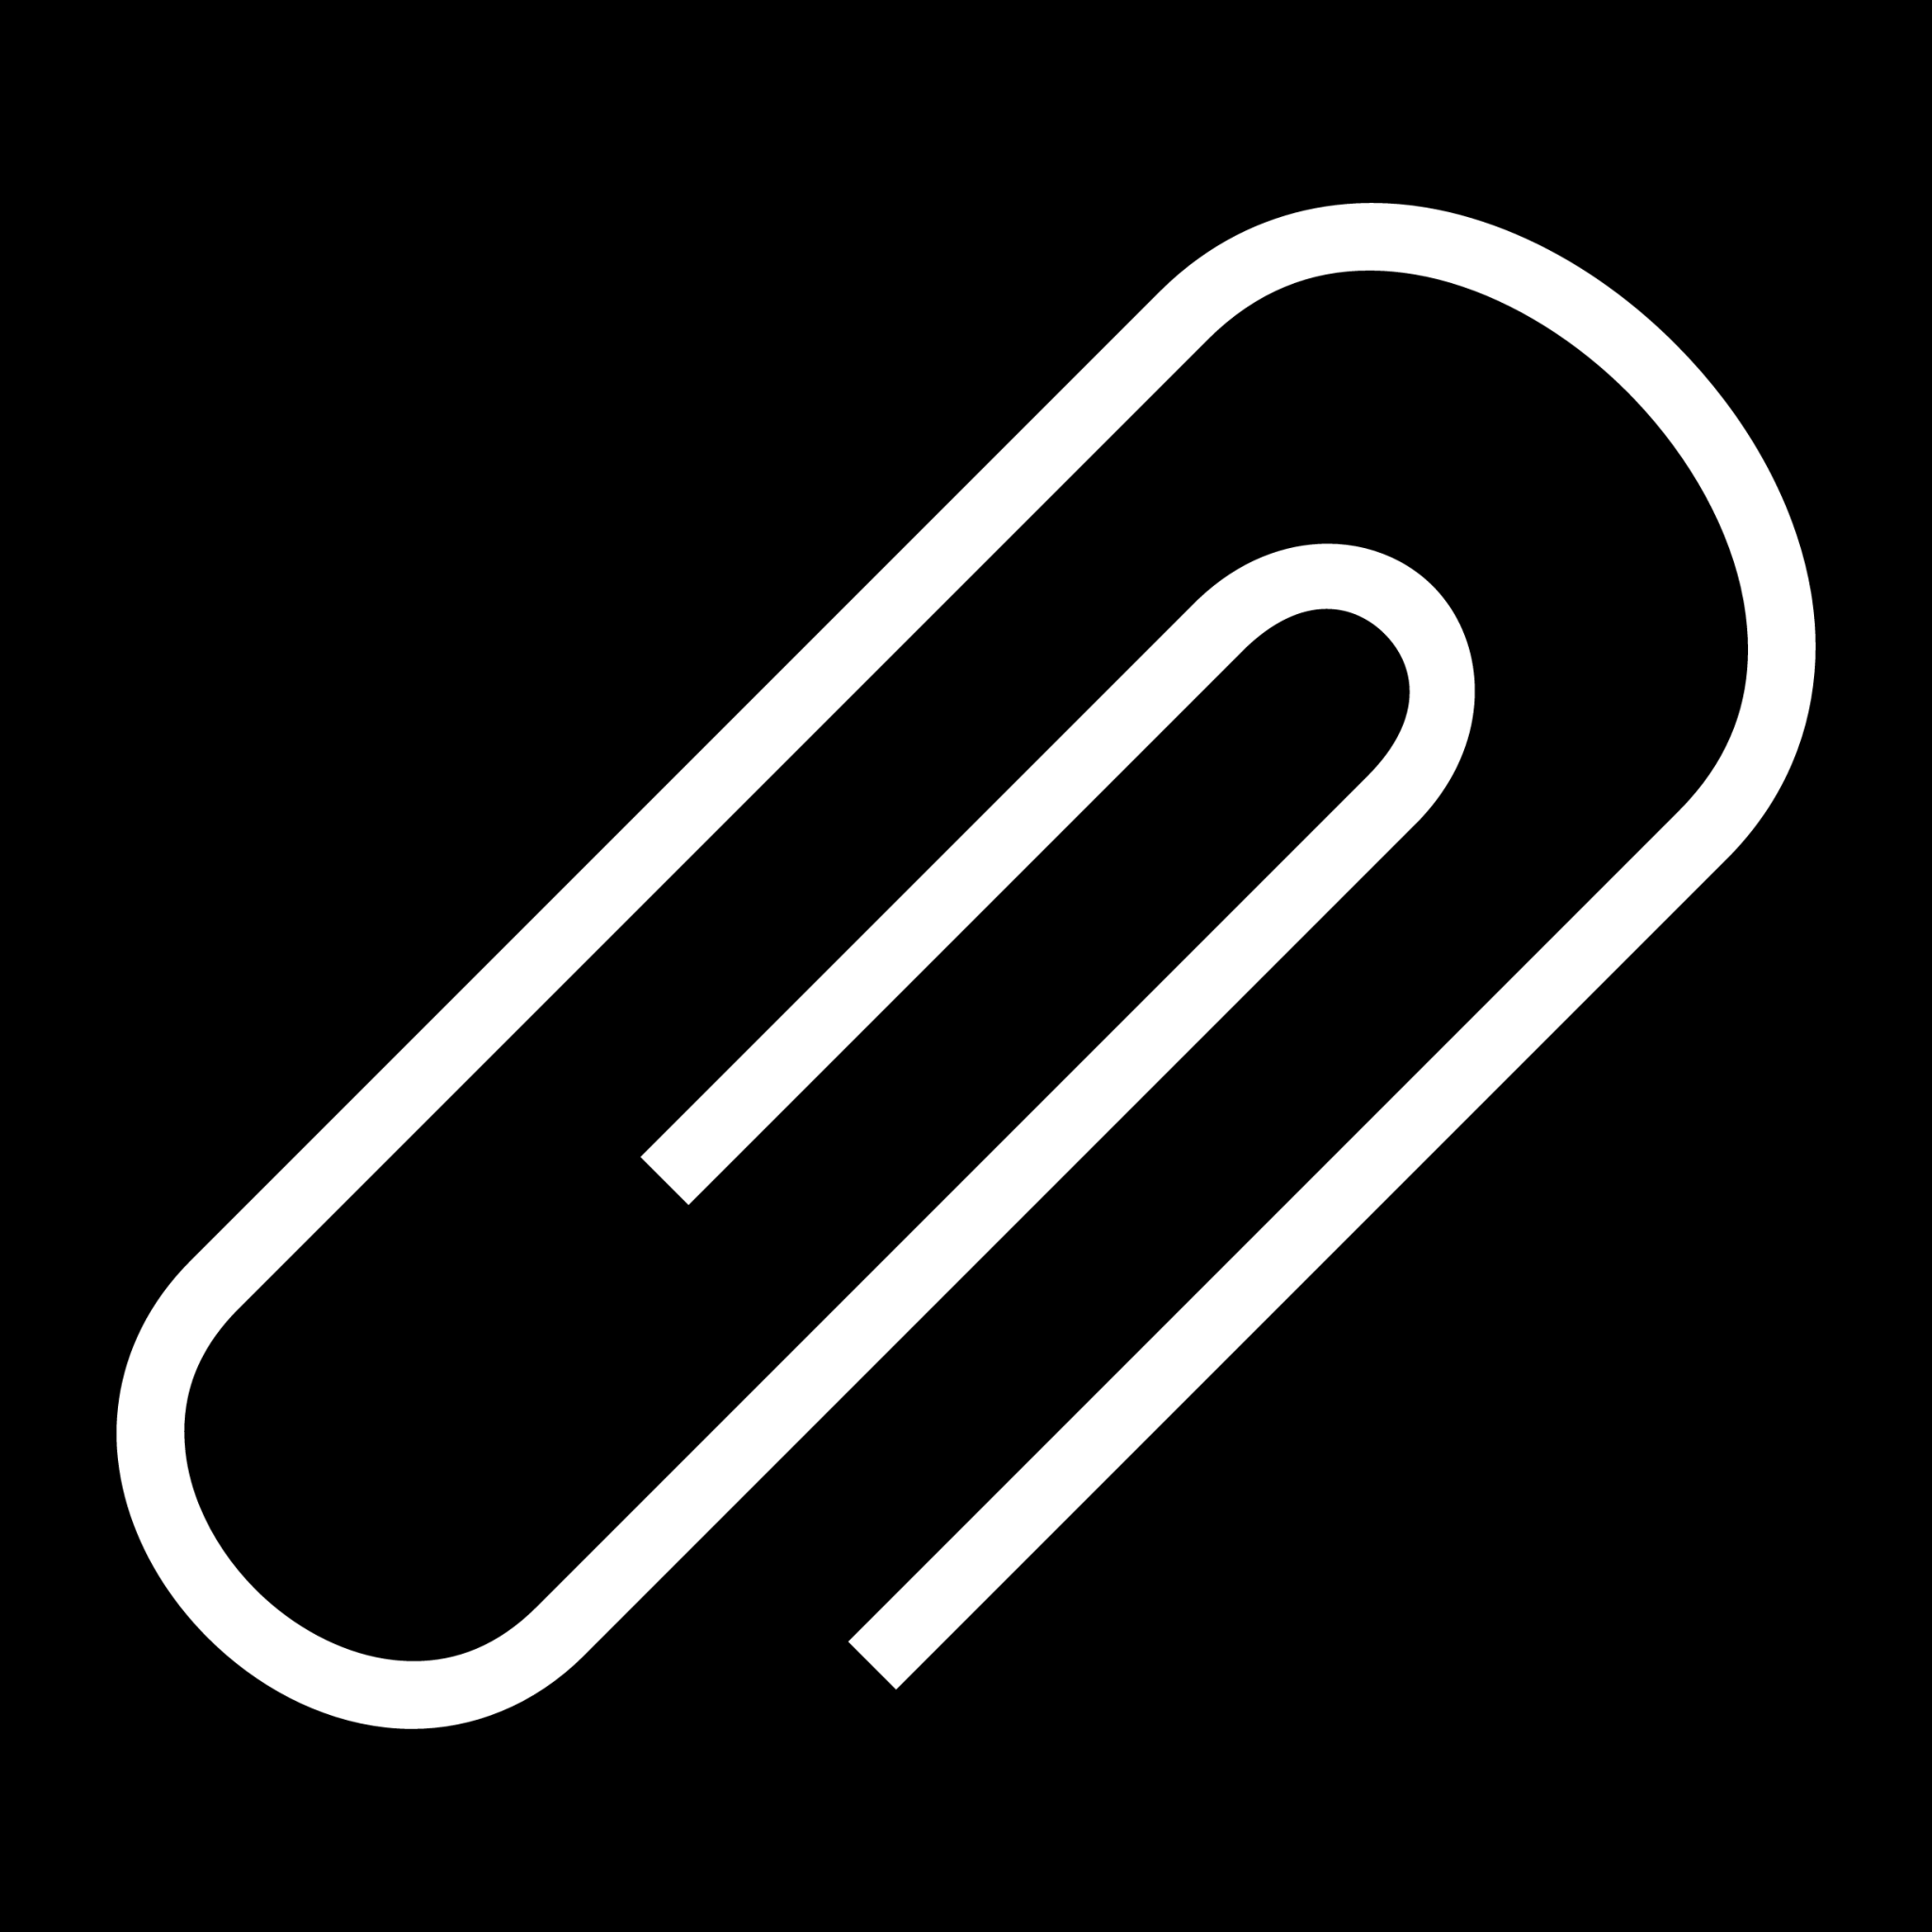 paper clip icon